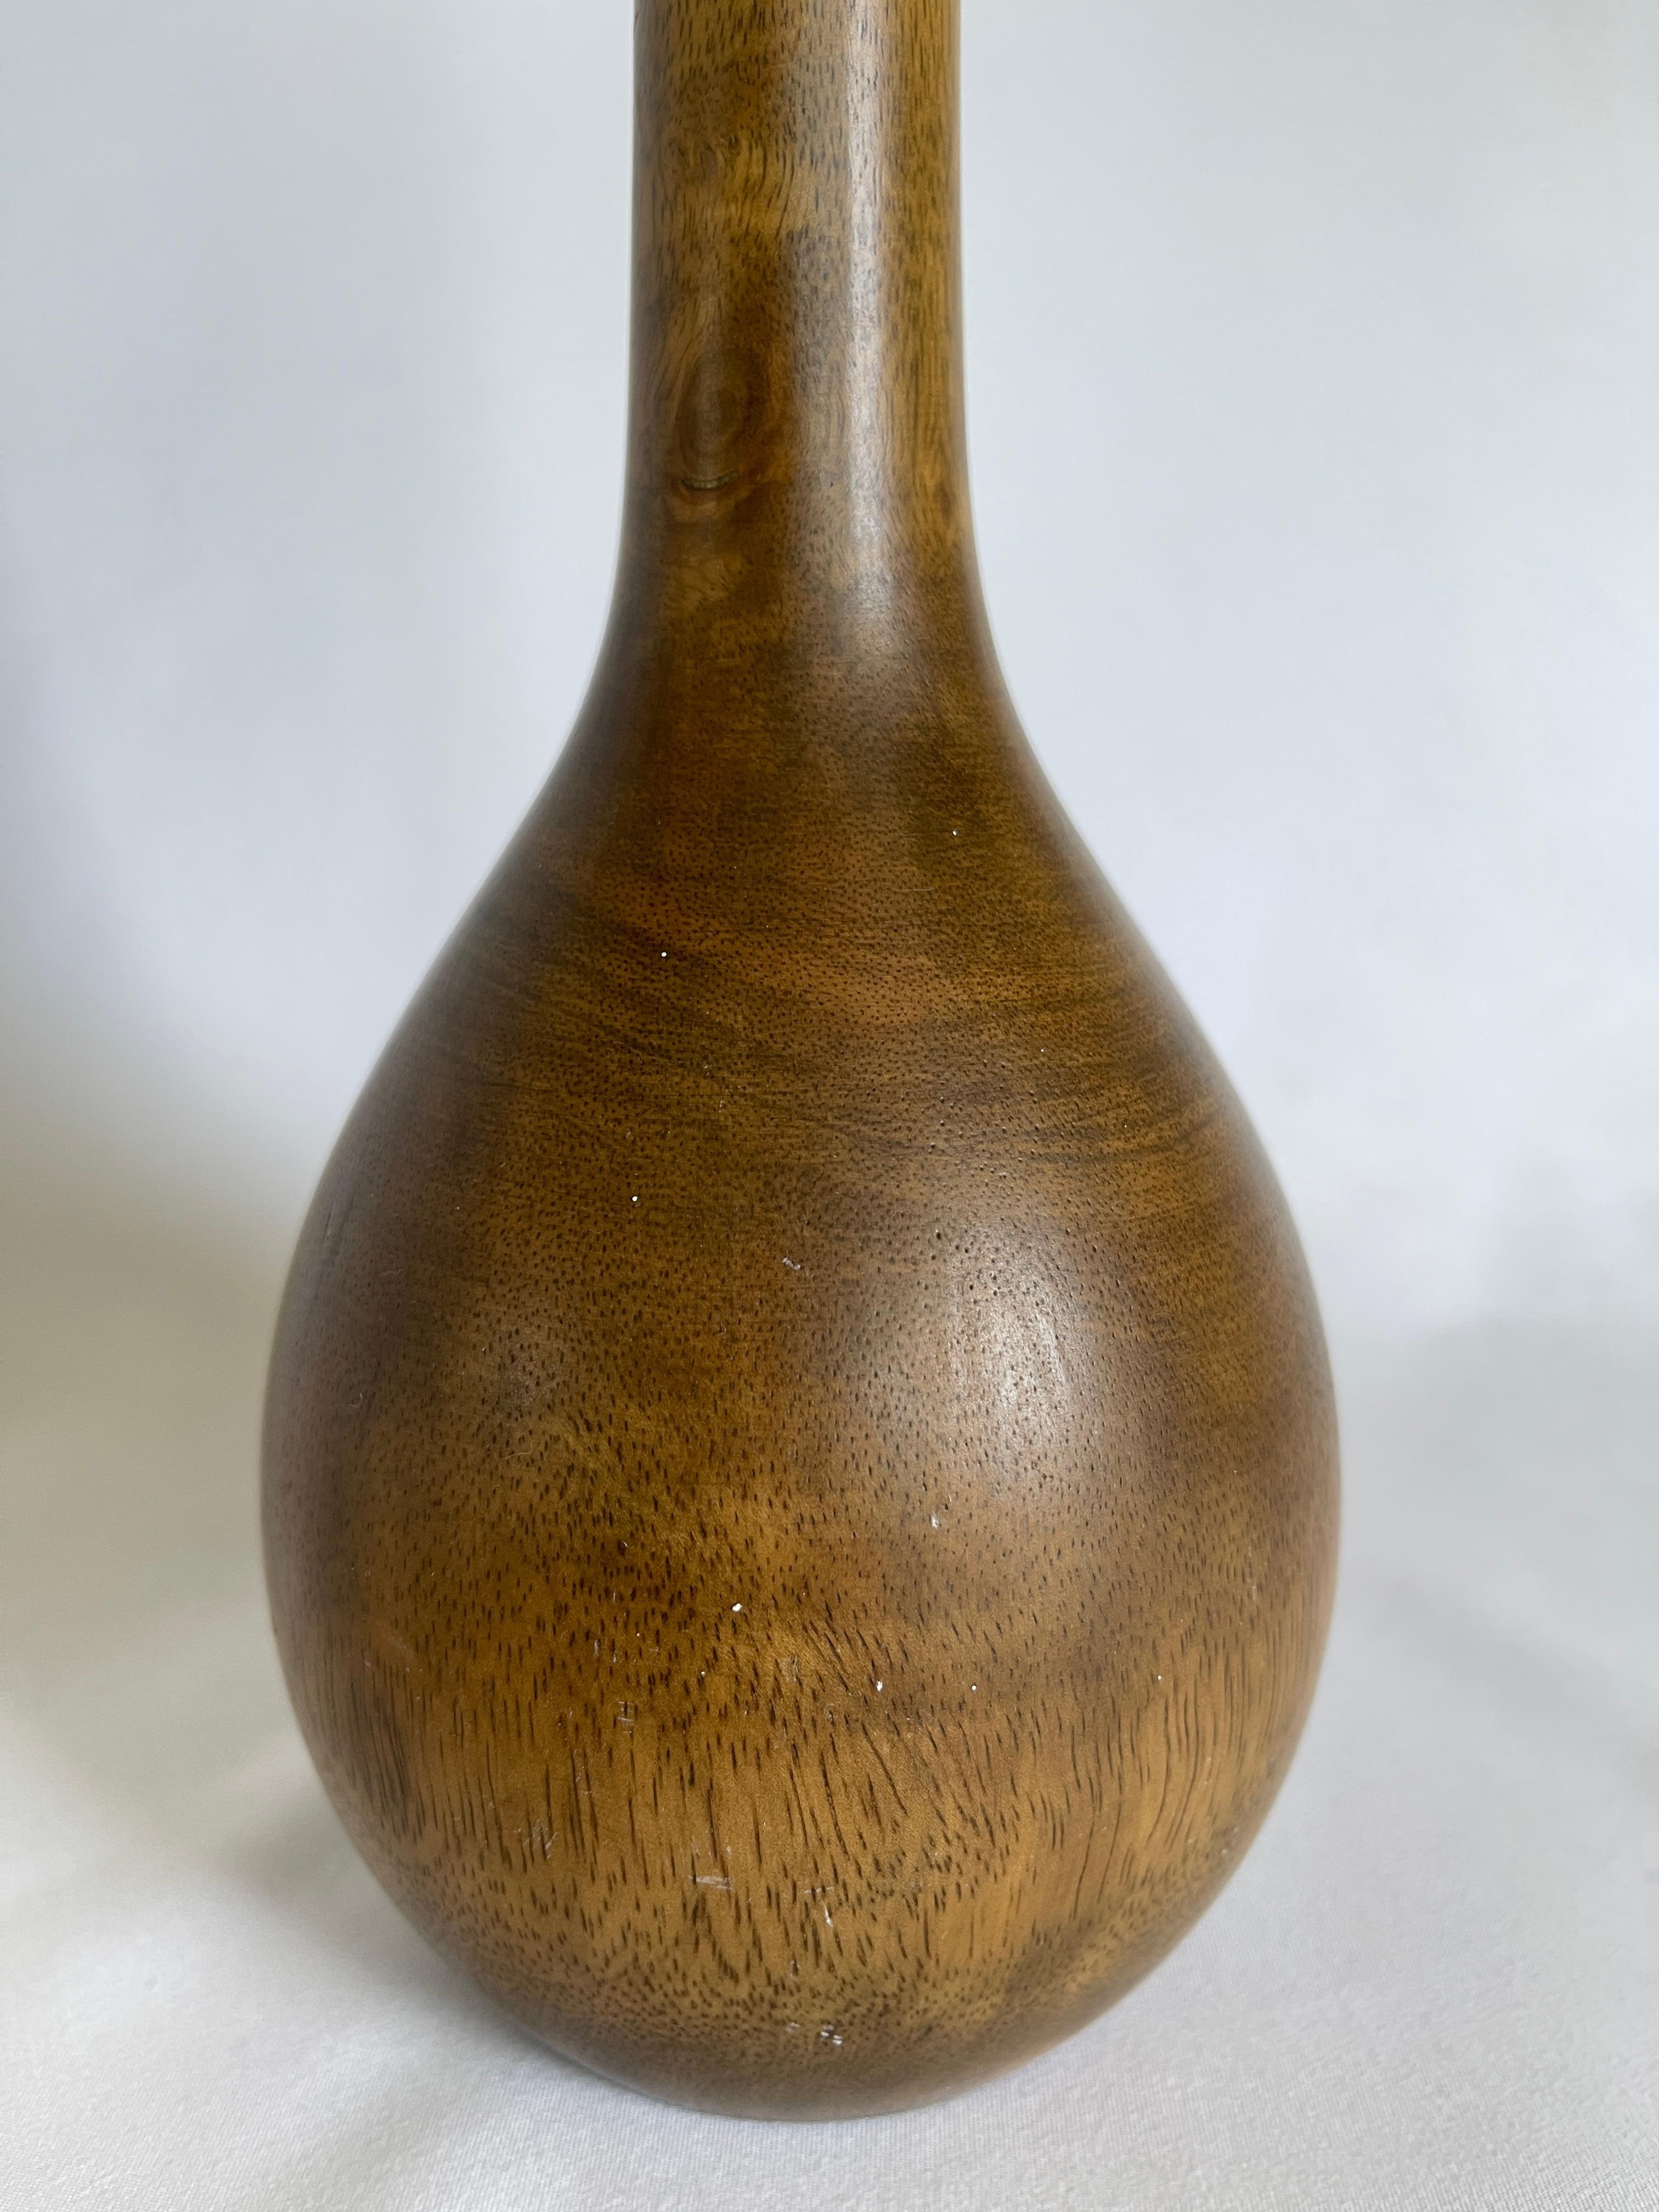 Große Flaschenvase aus Nussbaumholz, handgedreht auf einer Drehbank, zugeschrieben Phillips Lloyd Powell von der New Hope School, Pennsylvania.